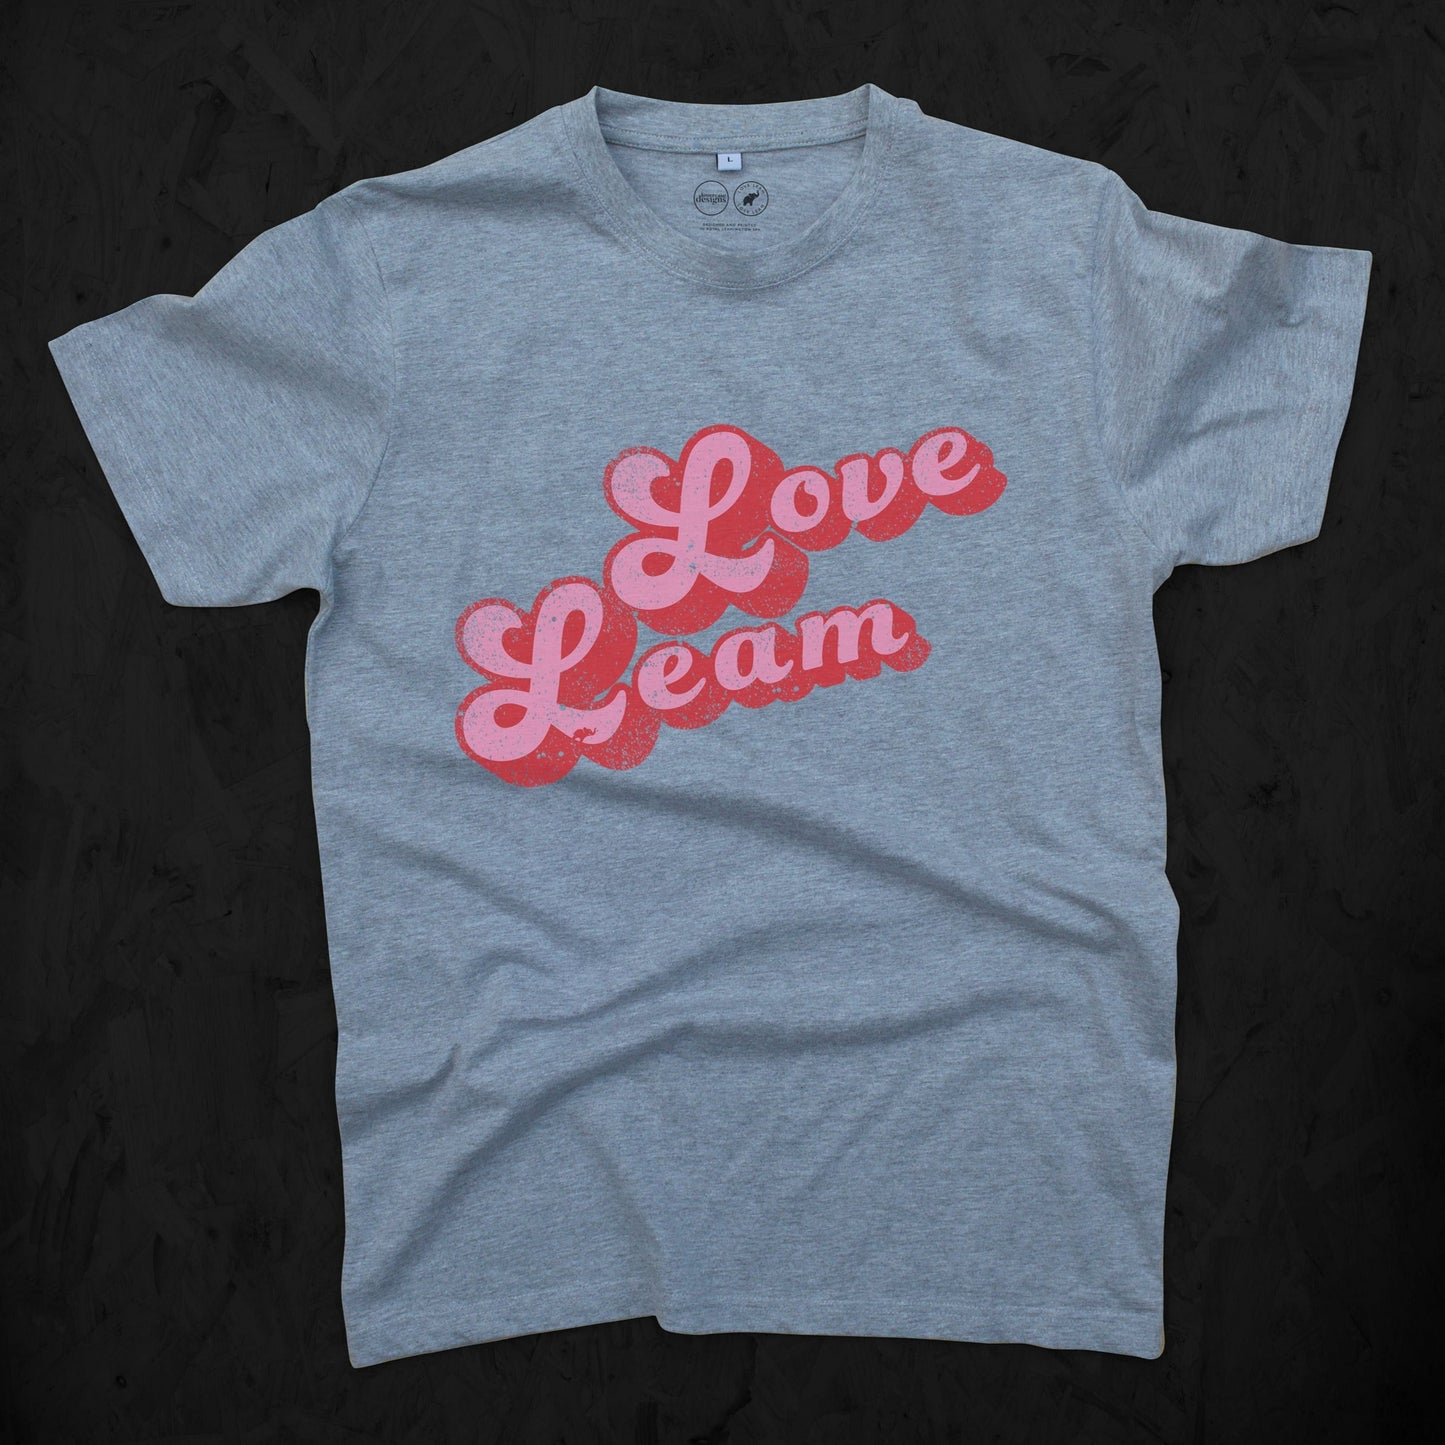 Love Leam 1 Tee Child's sizes 3-14 years